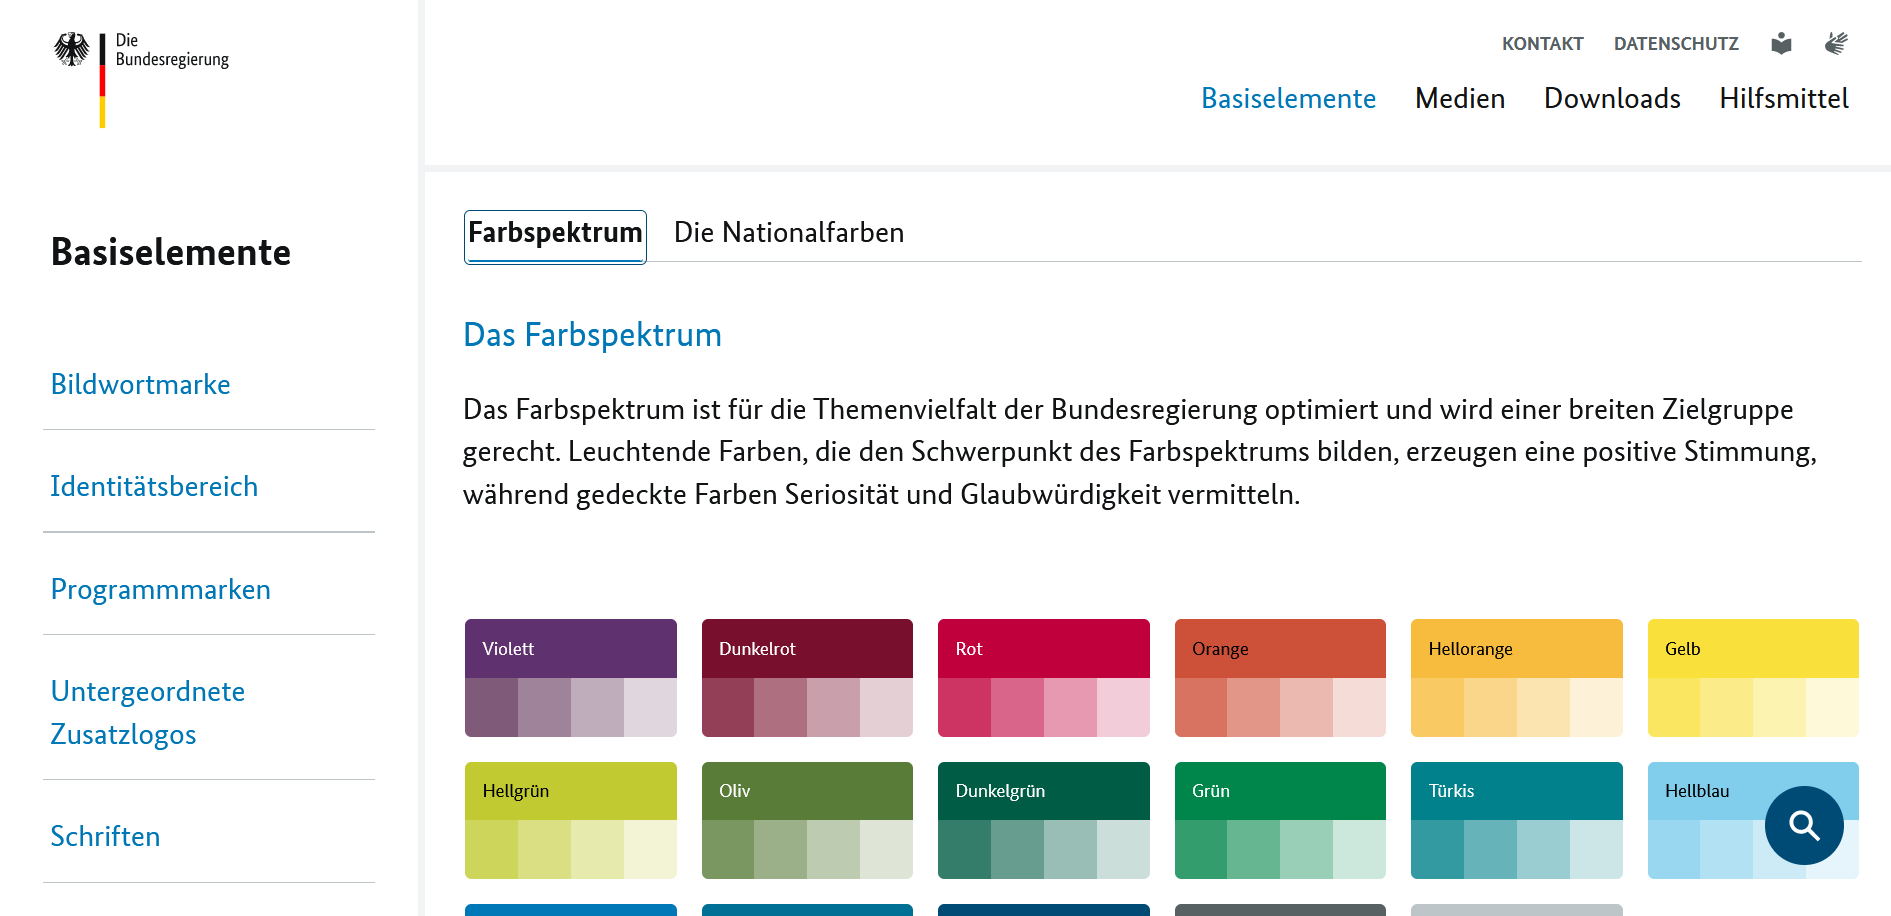 Screenshot vom Online-Styleguide der Bundesregierung mit dem Farbspektrum der Bundesregierung